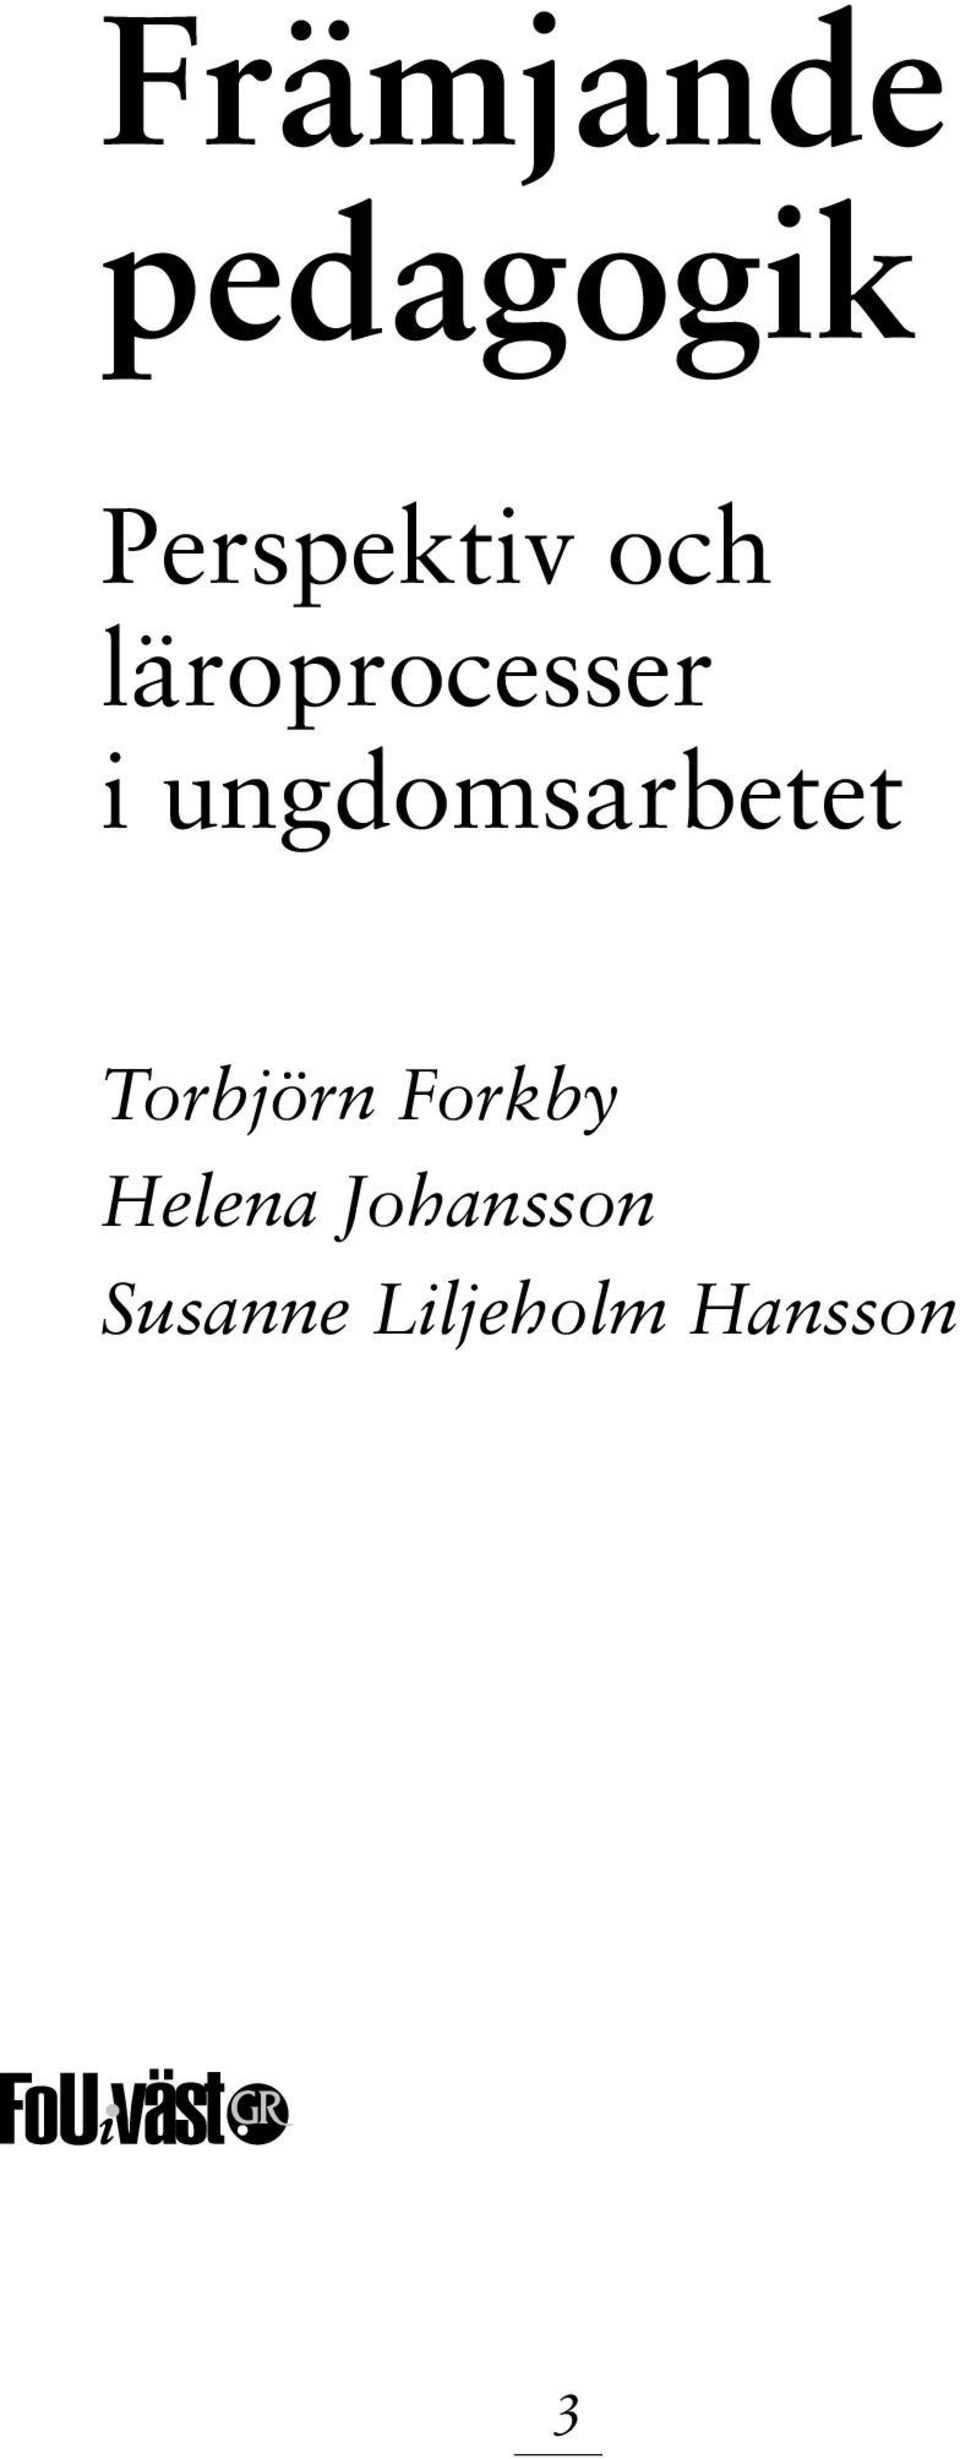 ungdomsarbetet Torbjörn Forkby